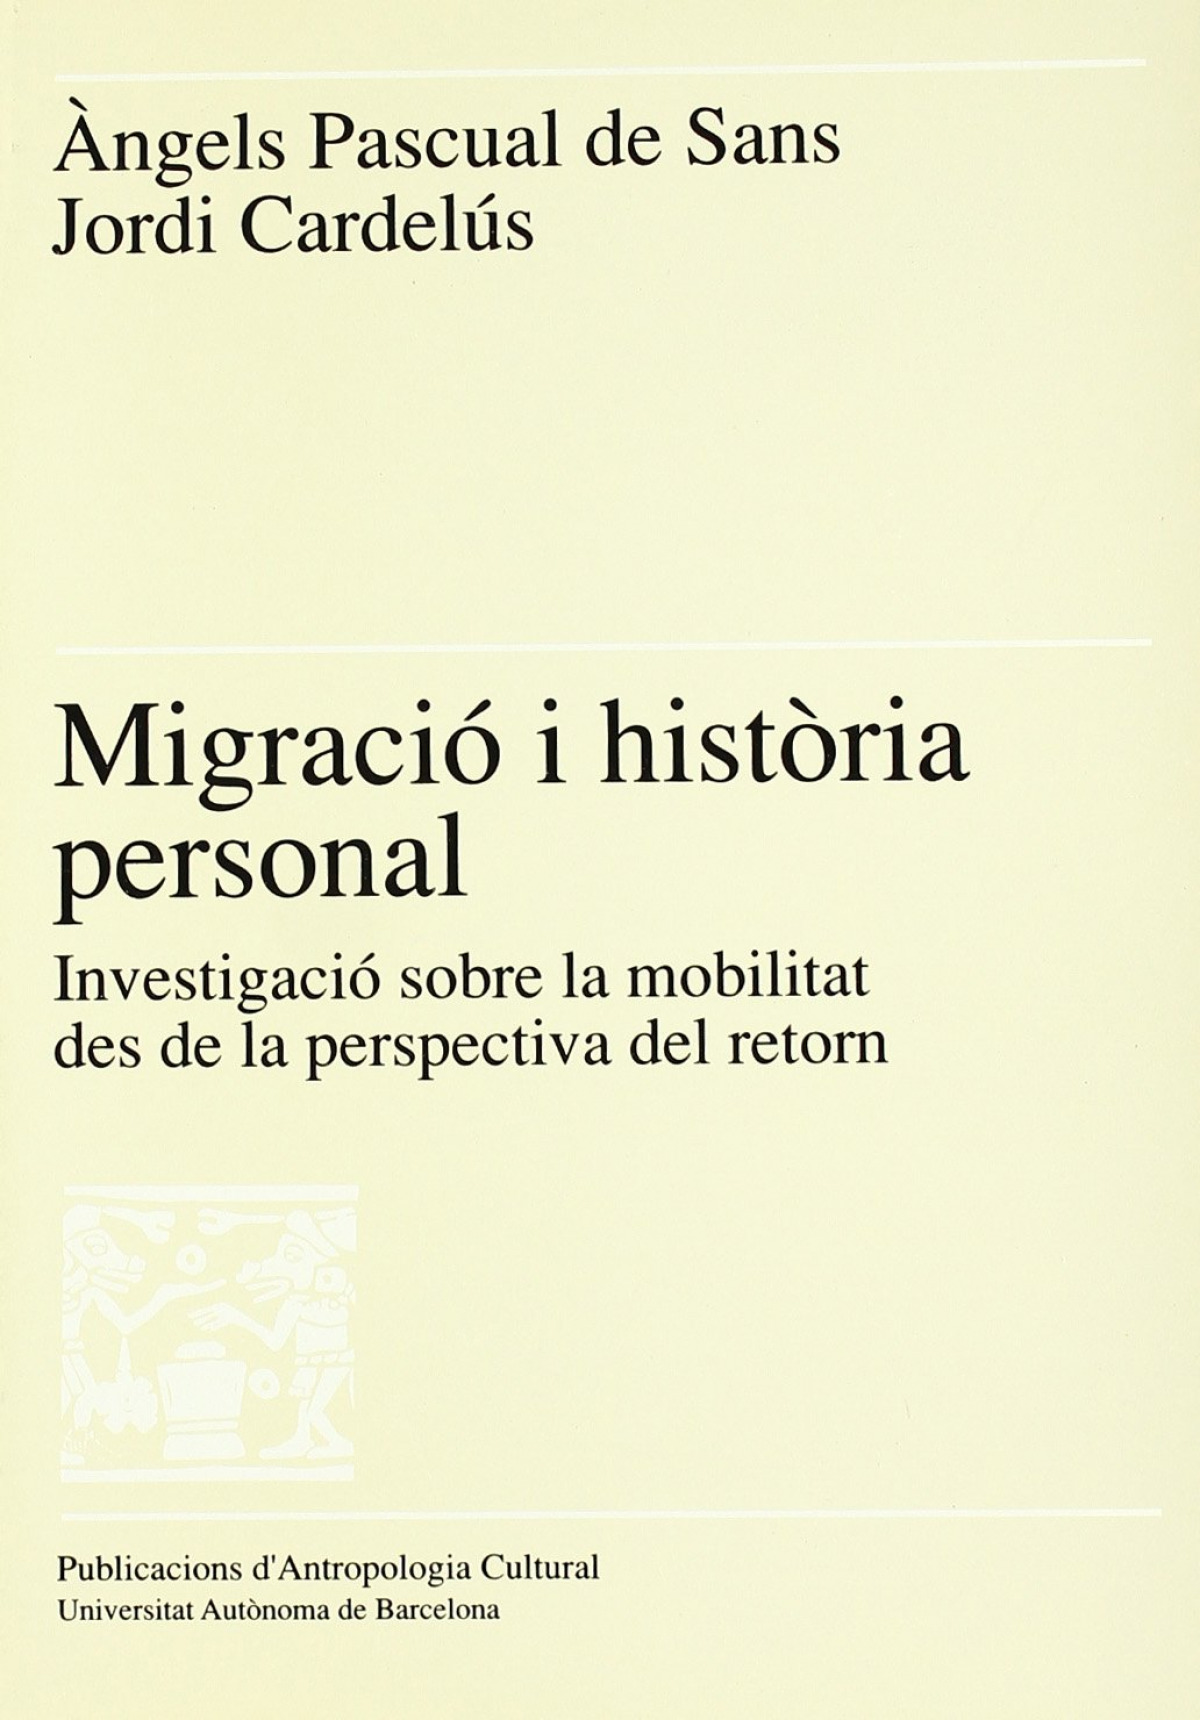 Migració i història personal: investigació sobre la mobilita - Cardelús, Jordi/ Pascual de Sans, Angels